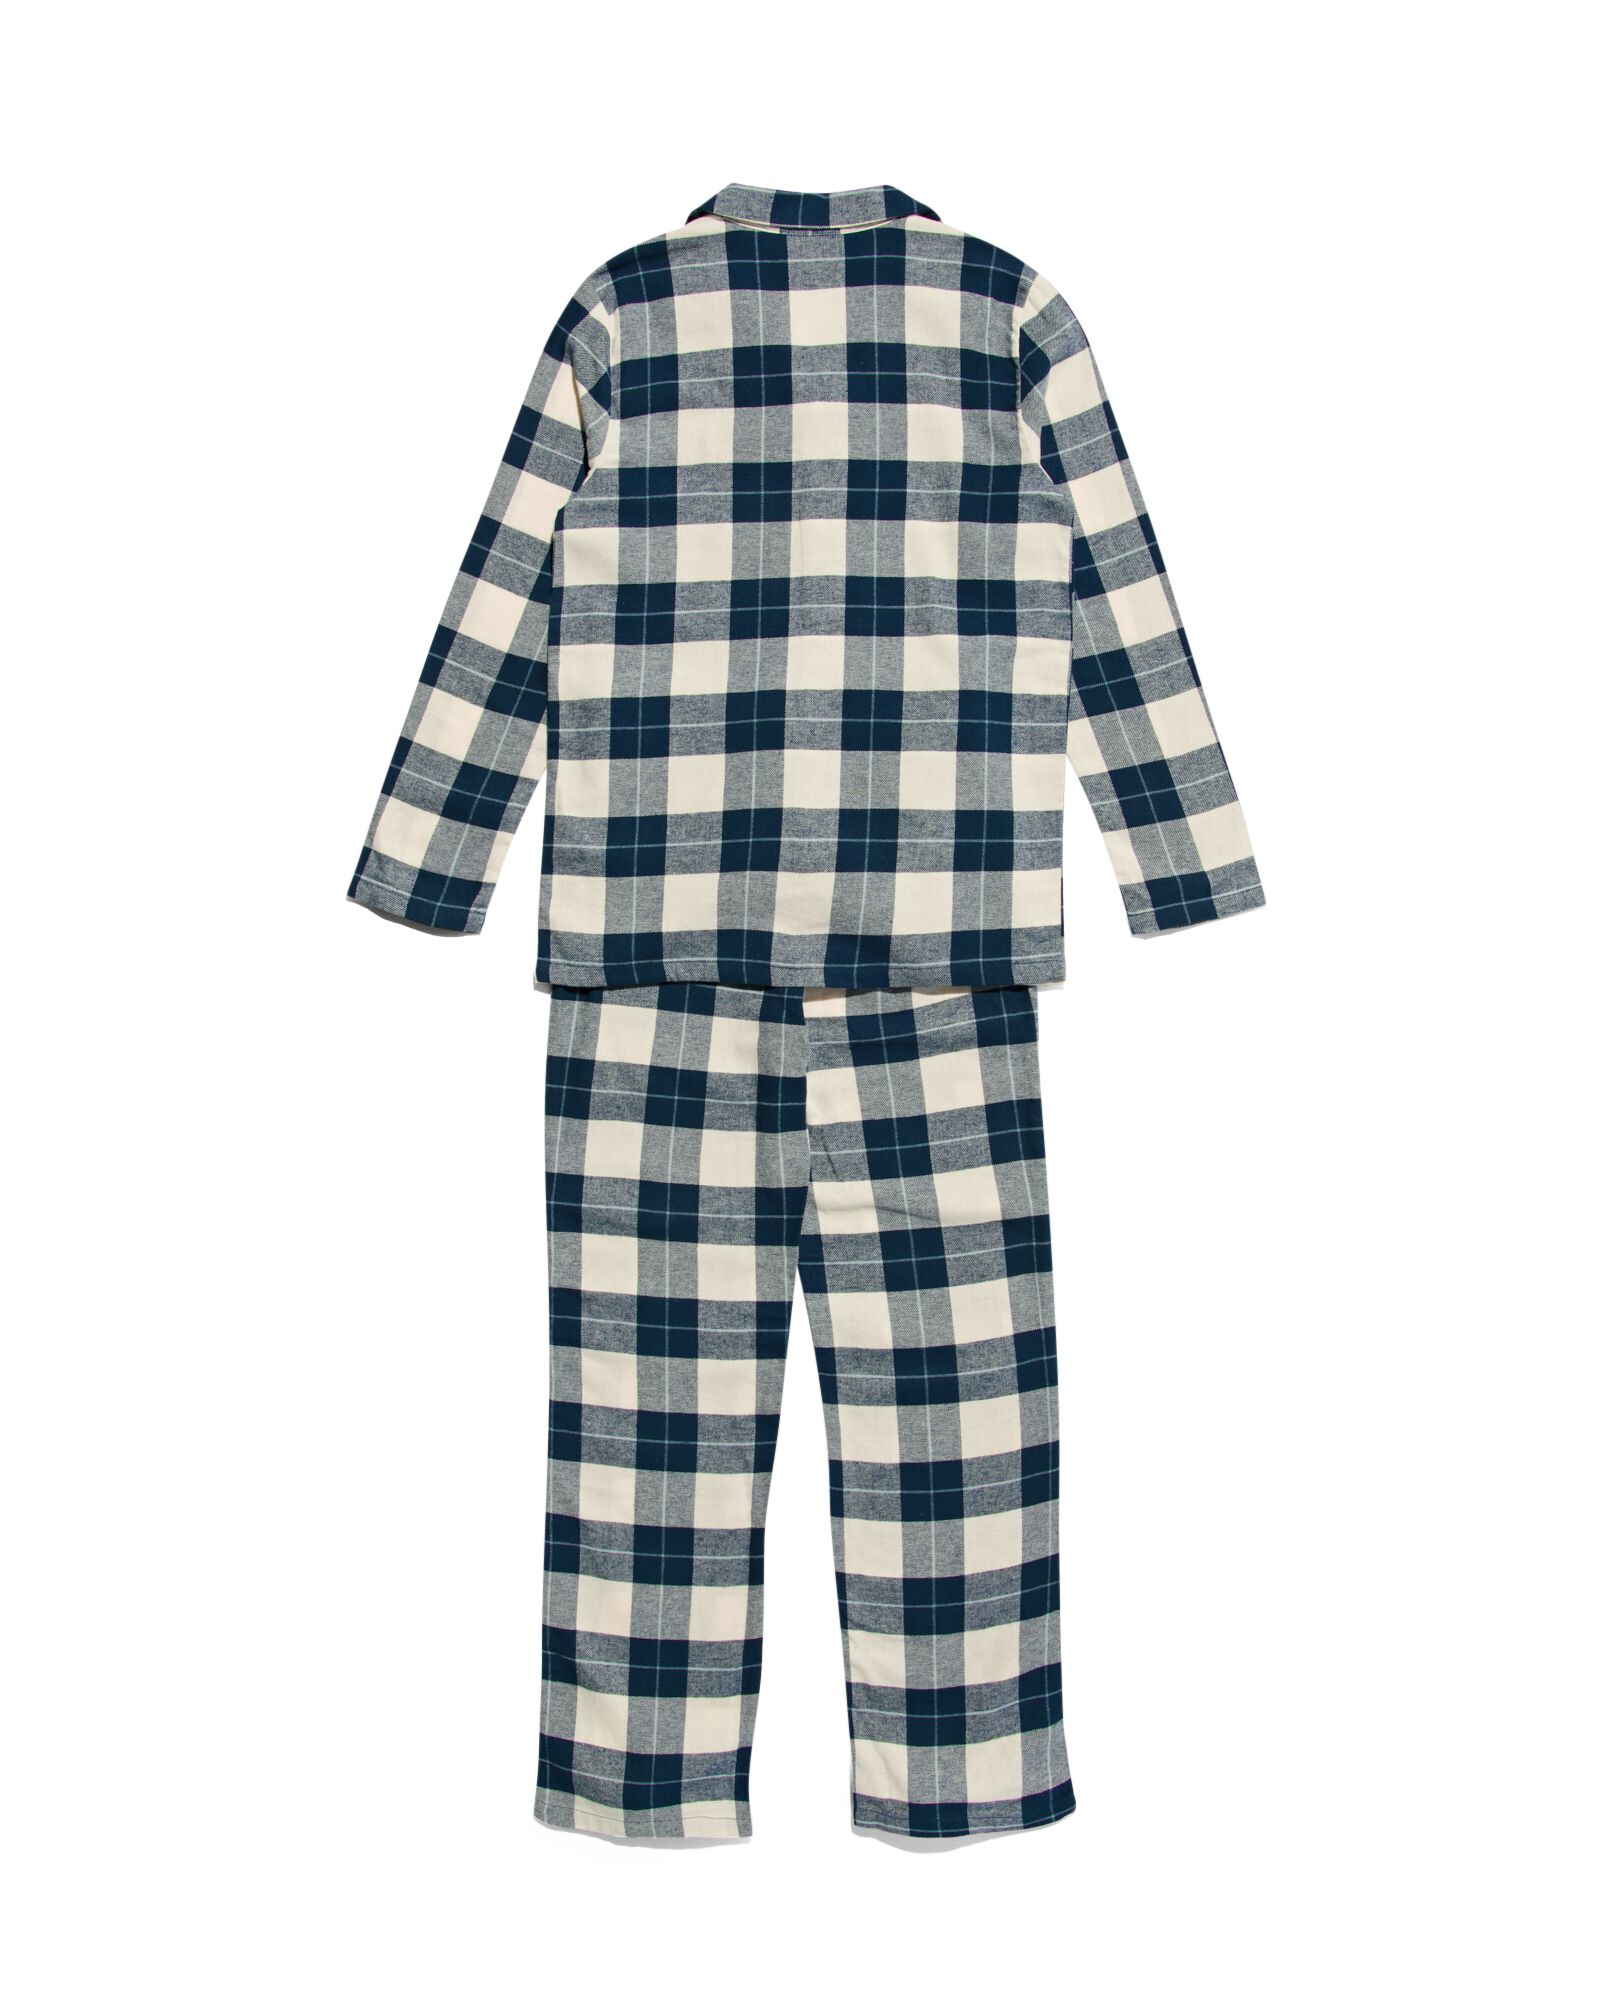 Kinder-Pyjama, Flanell, kariert dunkelblau dunkelblau - 23080480DARKBLUE - HEMA